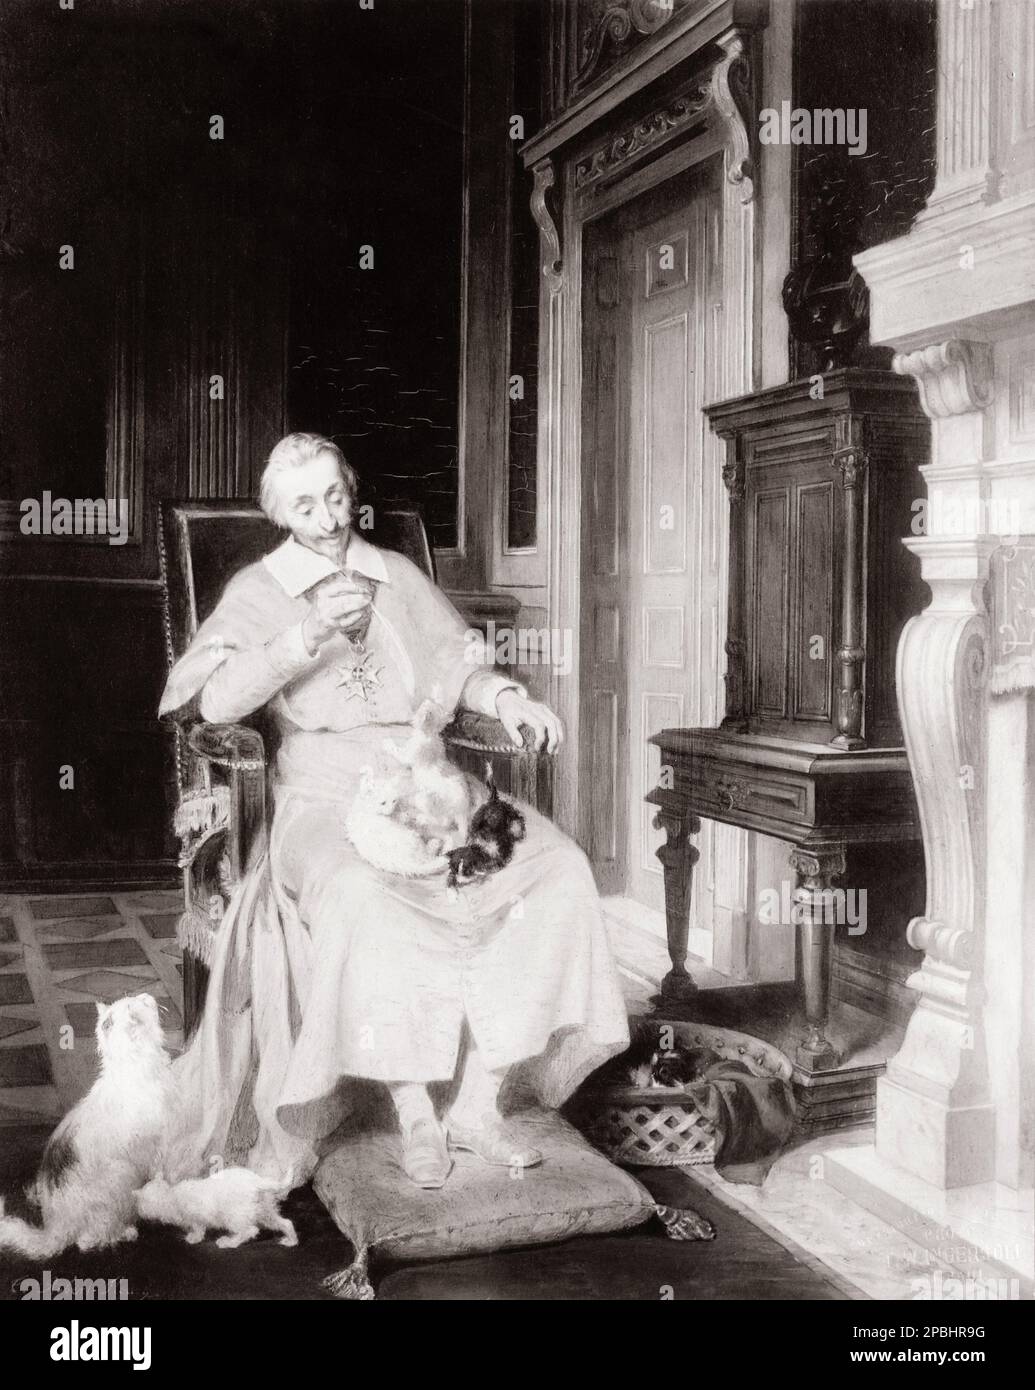 Der Kardinal RICHELIEU. Armand Jean du Plessis de Richelieu , Kardinal-Duc de Richelieu ( 1585 - 1642 ) , war ein französischer Geistlicher, Adliger und Staatsmann . Gemälde von T. Robert Henry ( 1908 ) - CLERICALE - CATHOLIC RELIGION - RELIGIONE CATTOLICA - RELIGIONE CATTOLICA - CATHOLIC RELIGION - Rituto - Portrait - POLITICA - POLITIC - POLITIC - POLITICAL - POLITICAL - POLITICAL - POLITIC - POLITICAL - POLITICAL - POLITICAL - POLITICAL - MOUSTACHE - Bart - barba - Halsband - colletto - Adling - Nobiltà italiana - nobile - gatti - Katzen --- Archivio GBB Stockfoto